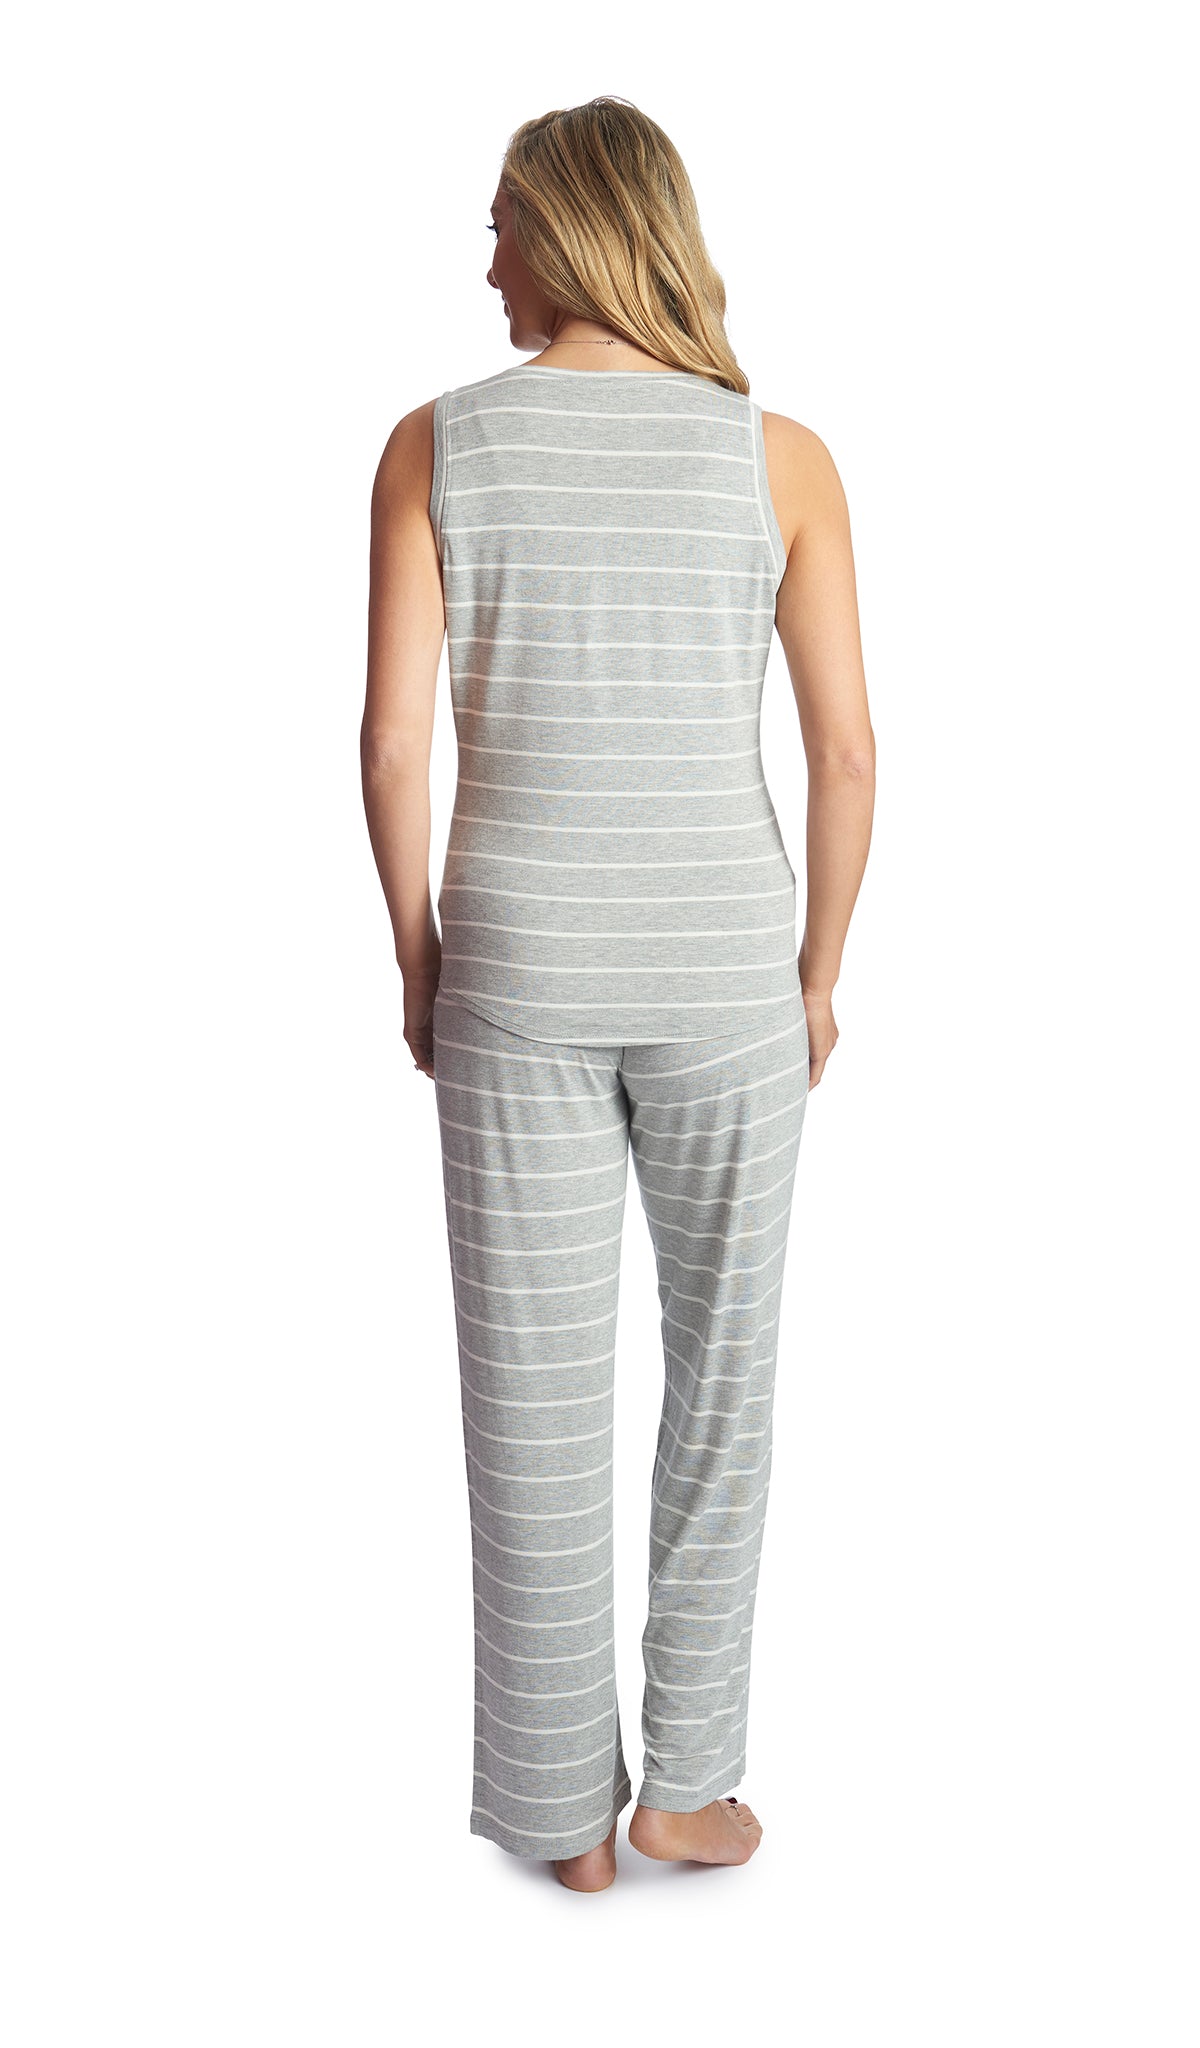 Everly Grey Joy Tank & Pants Maternity/Nursing Pajamas